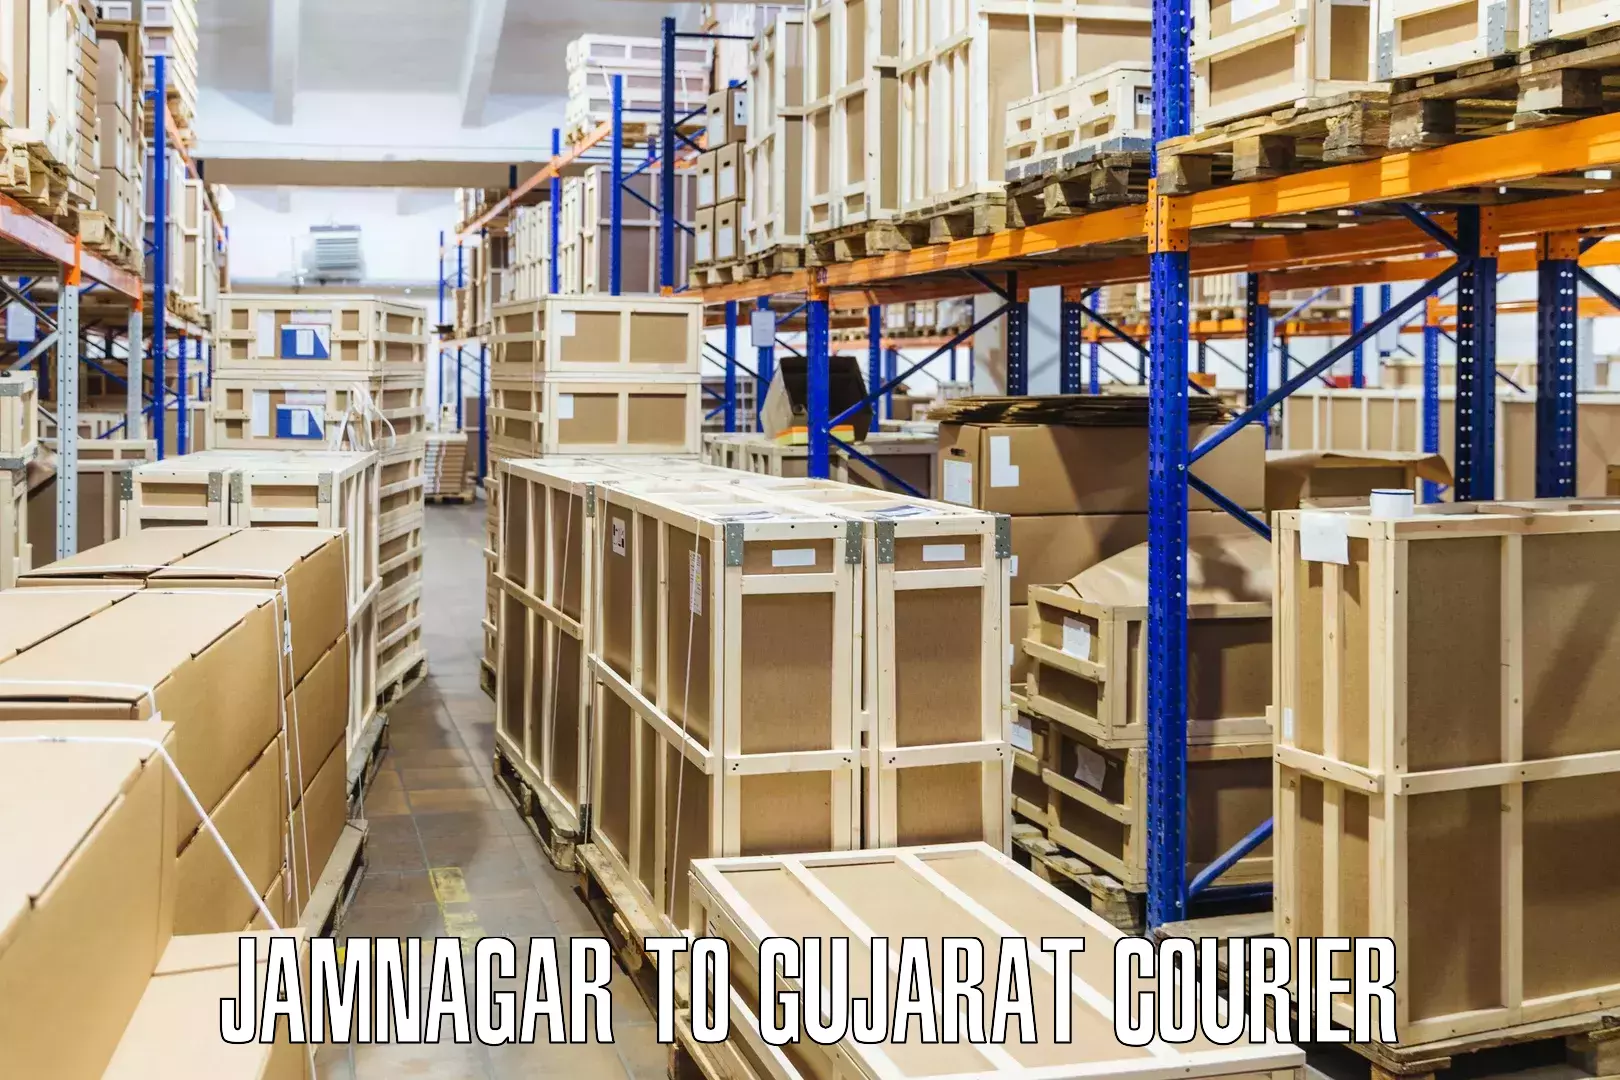 Reliable delivery network Jamnagar to Gandhinagar